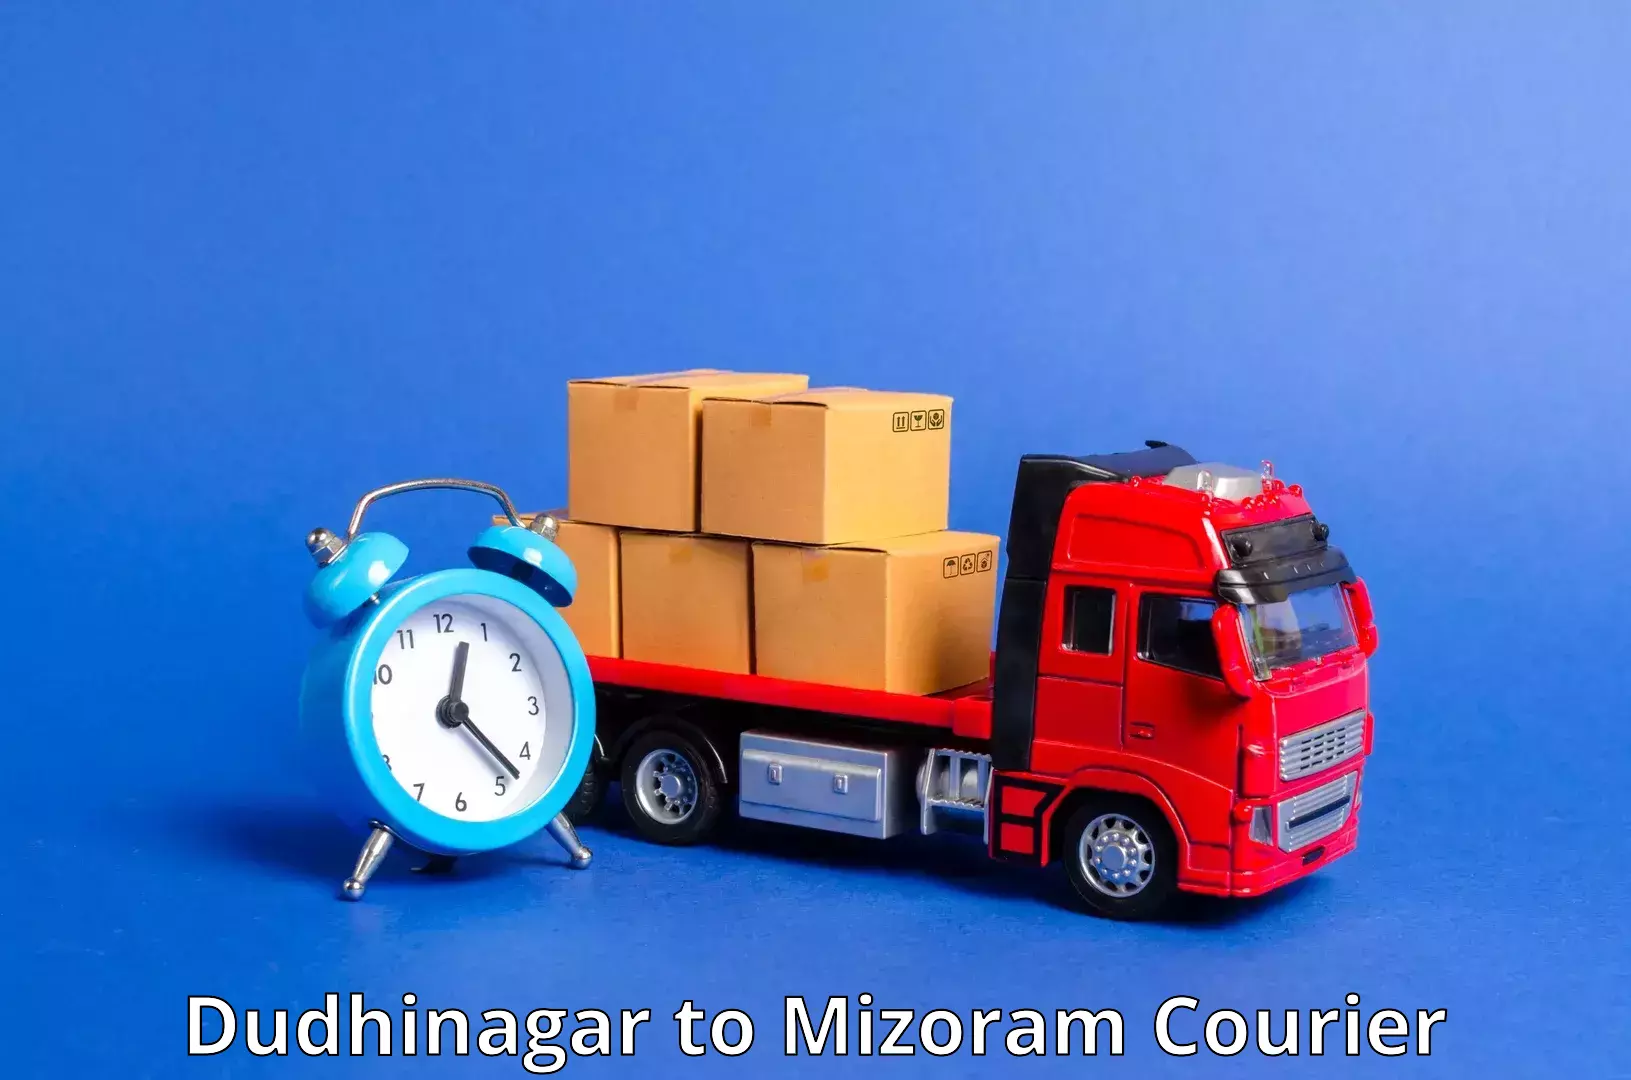 Efficient freight service Dudhinagar to Mizoram